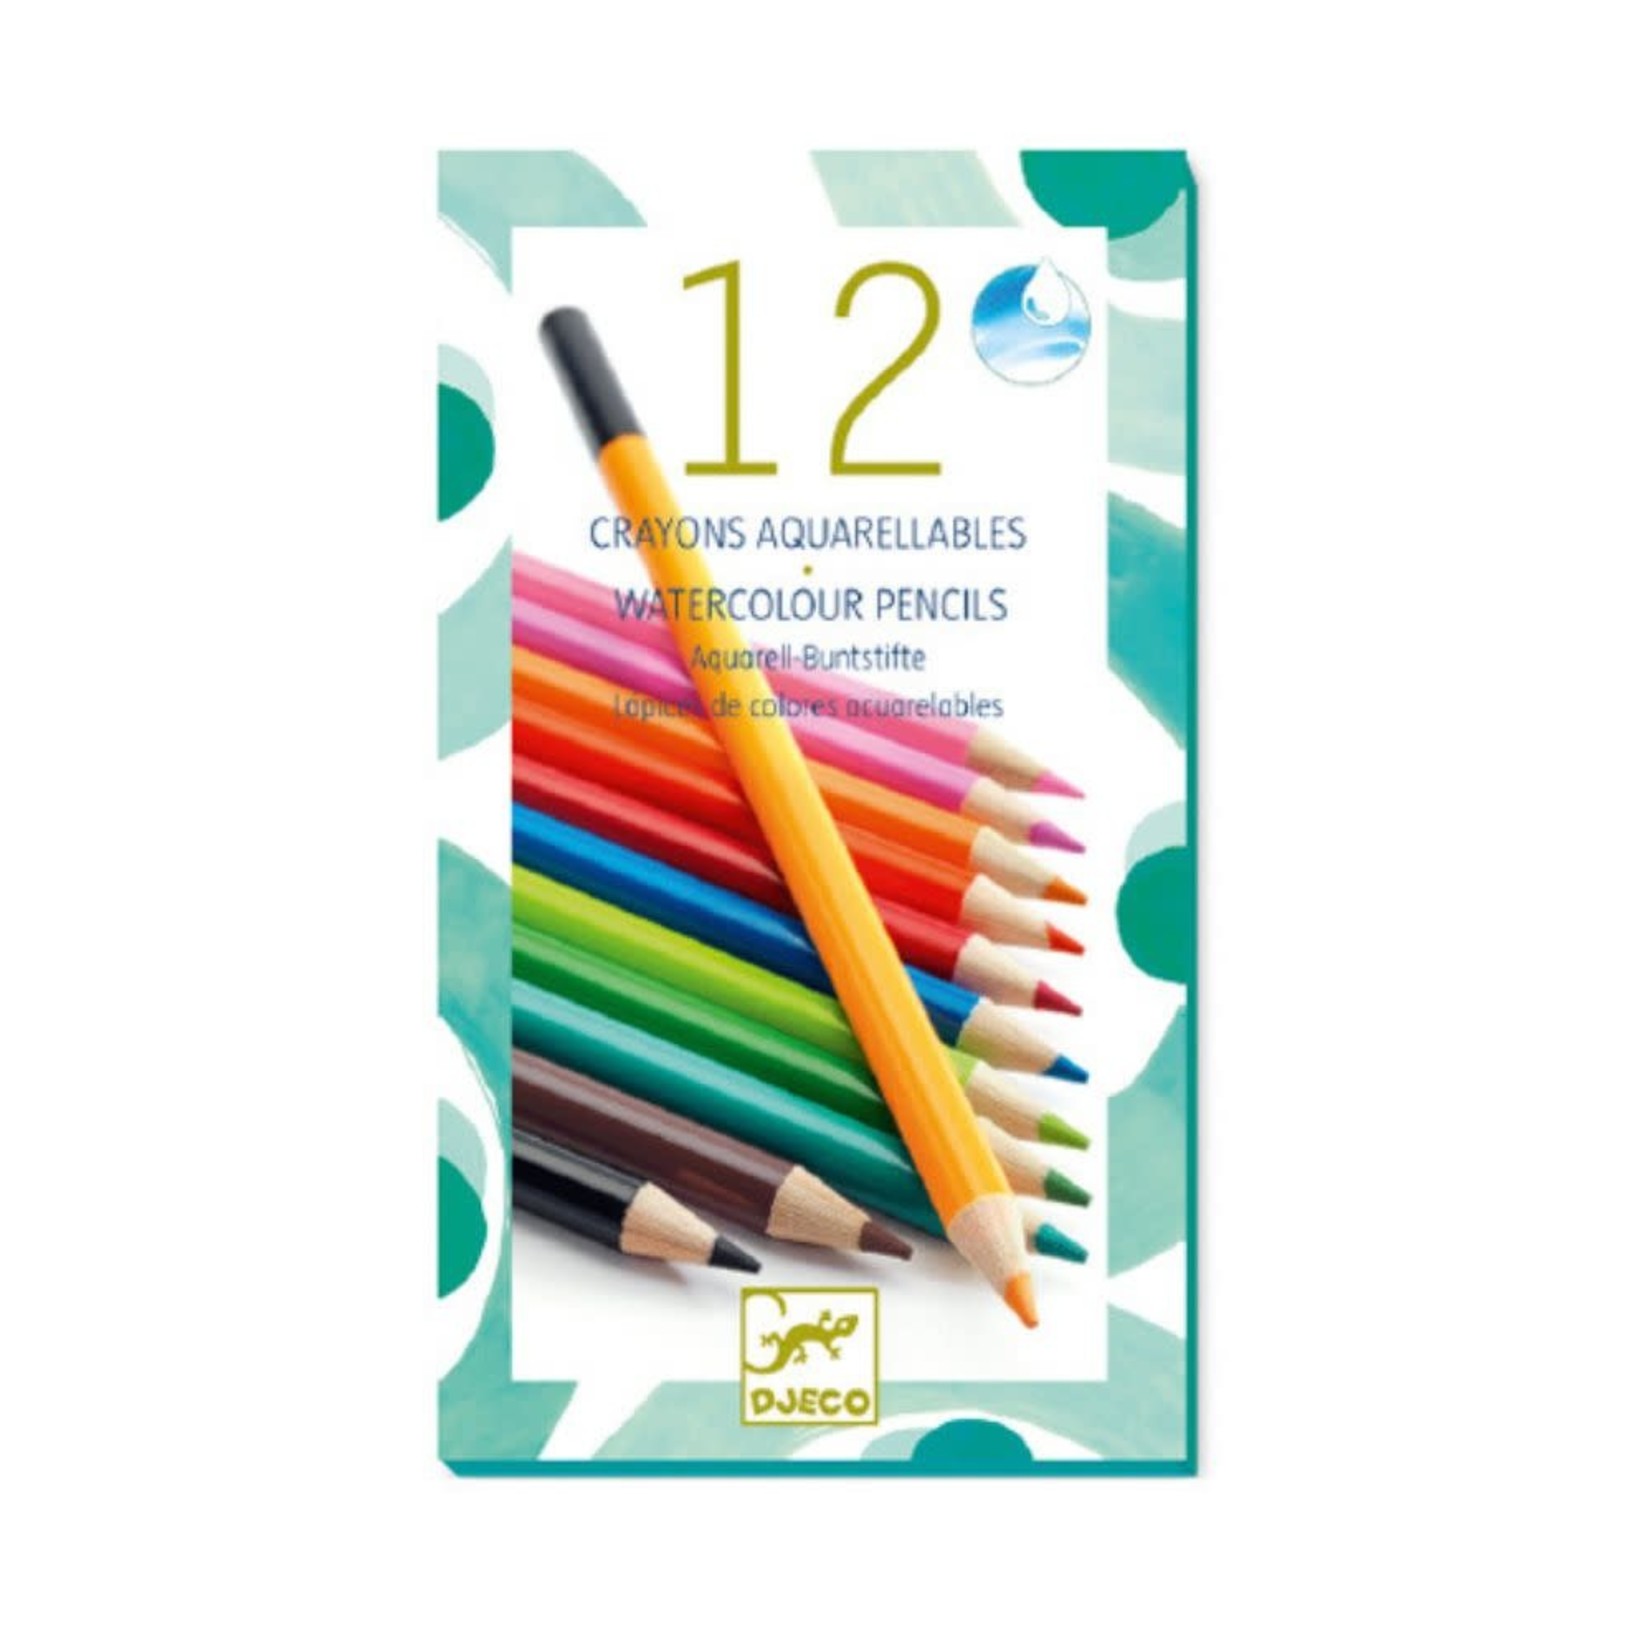 Djeco 12 crayons aquarellables